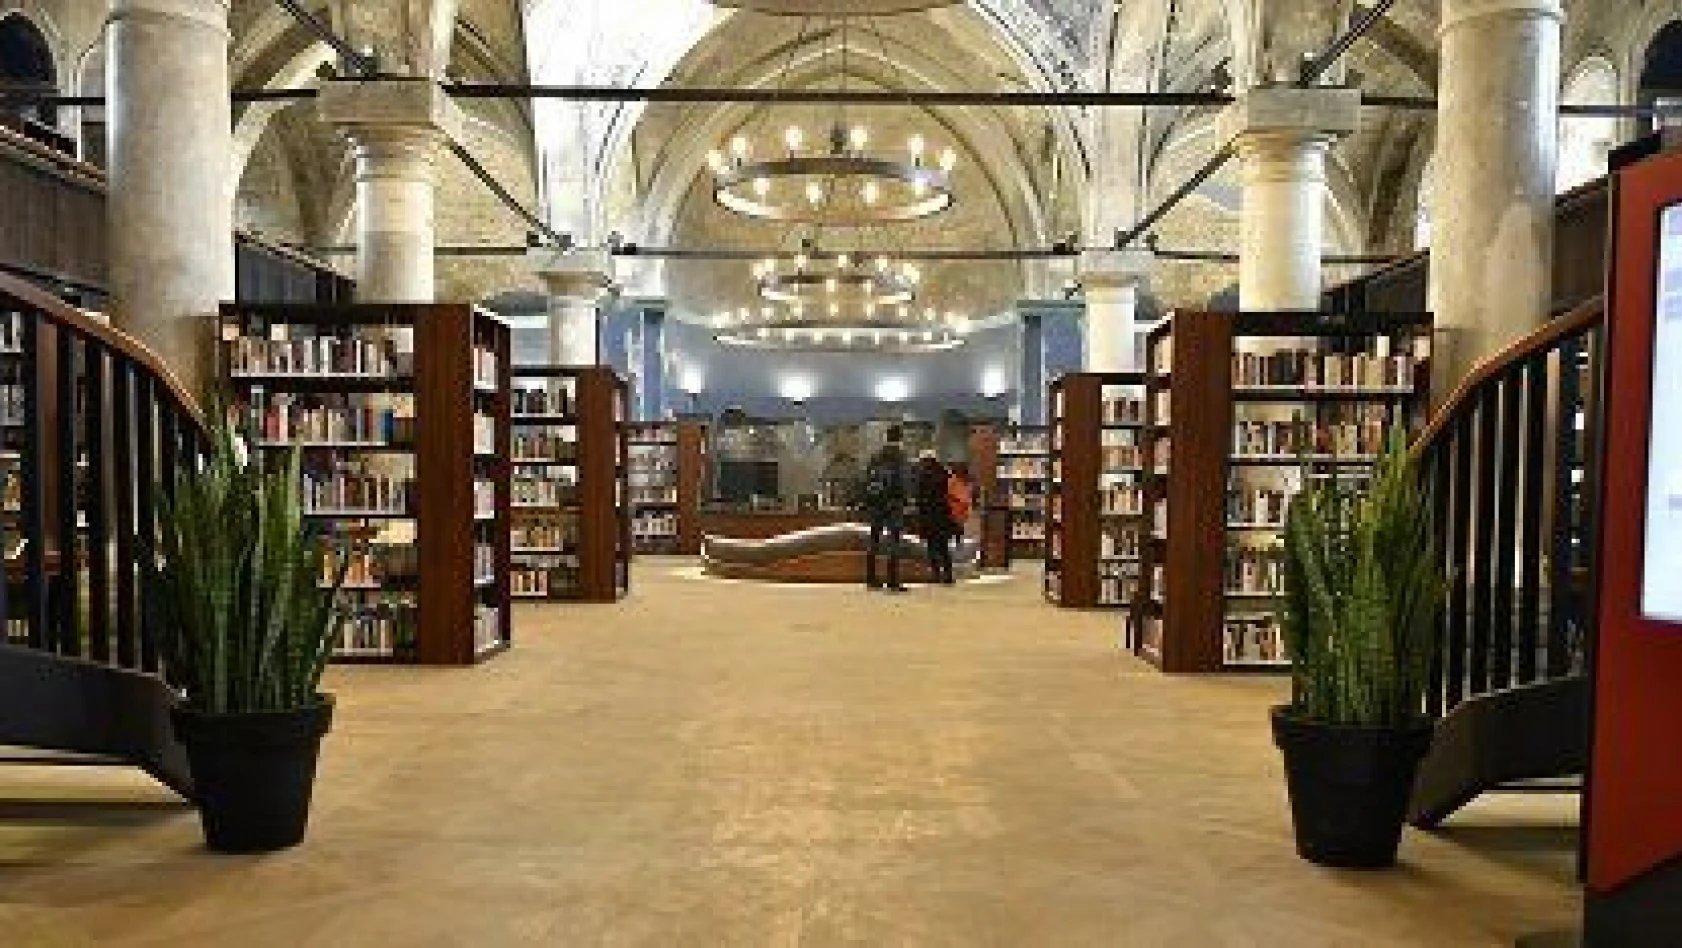 Şehir kütüphanesi törenle açılıyor